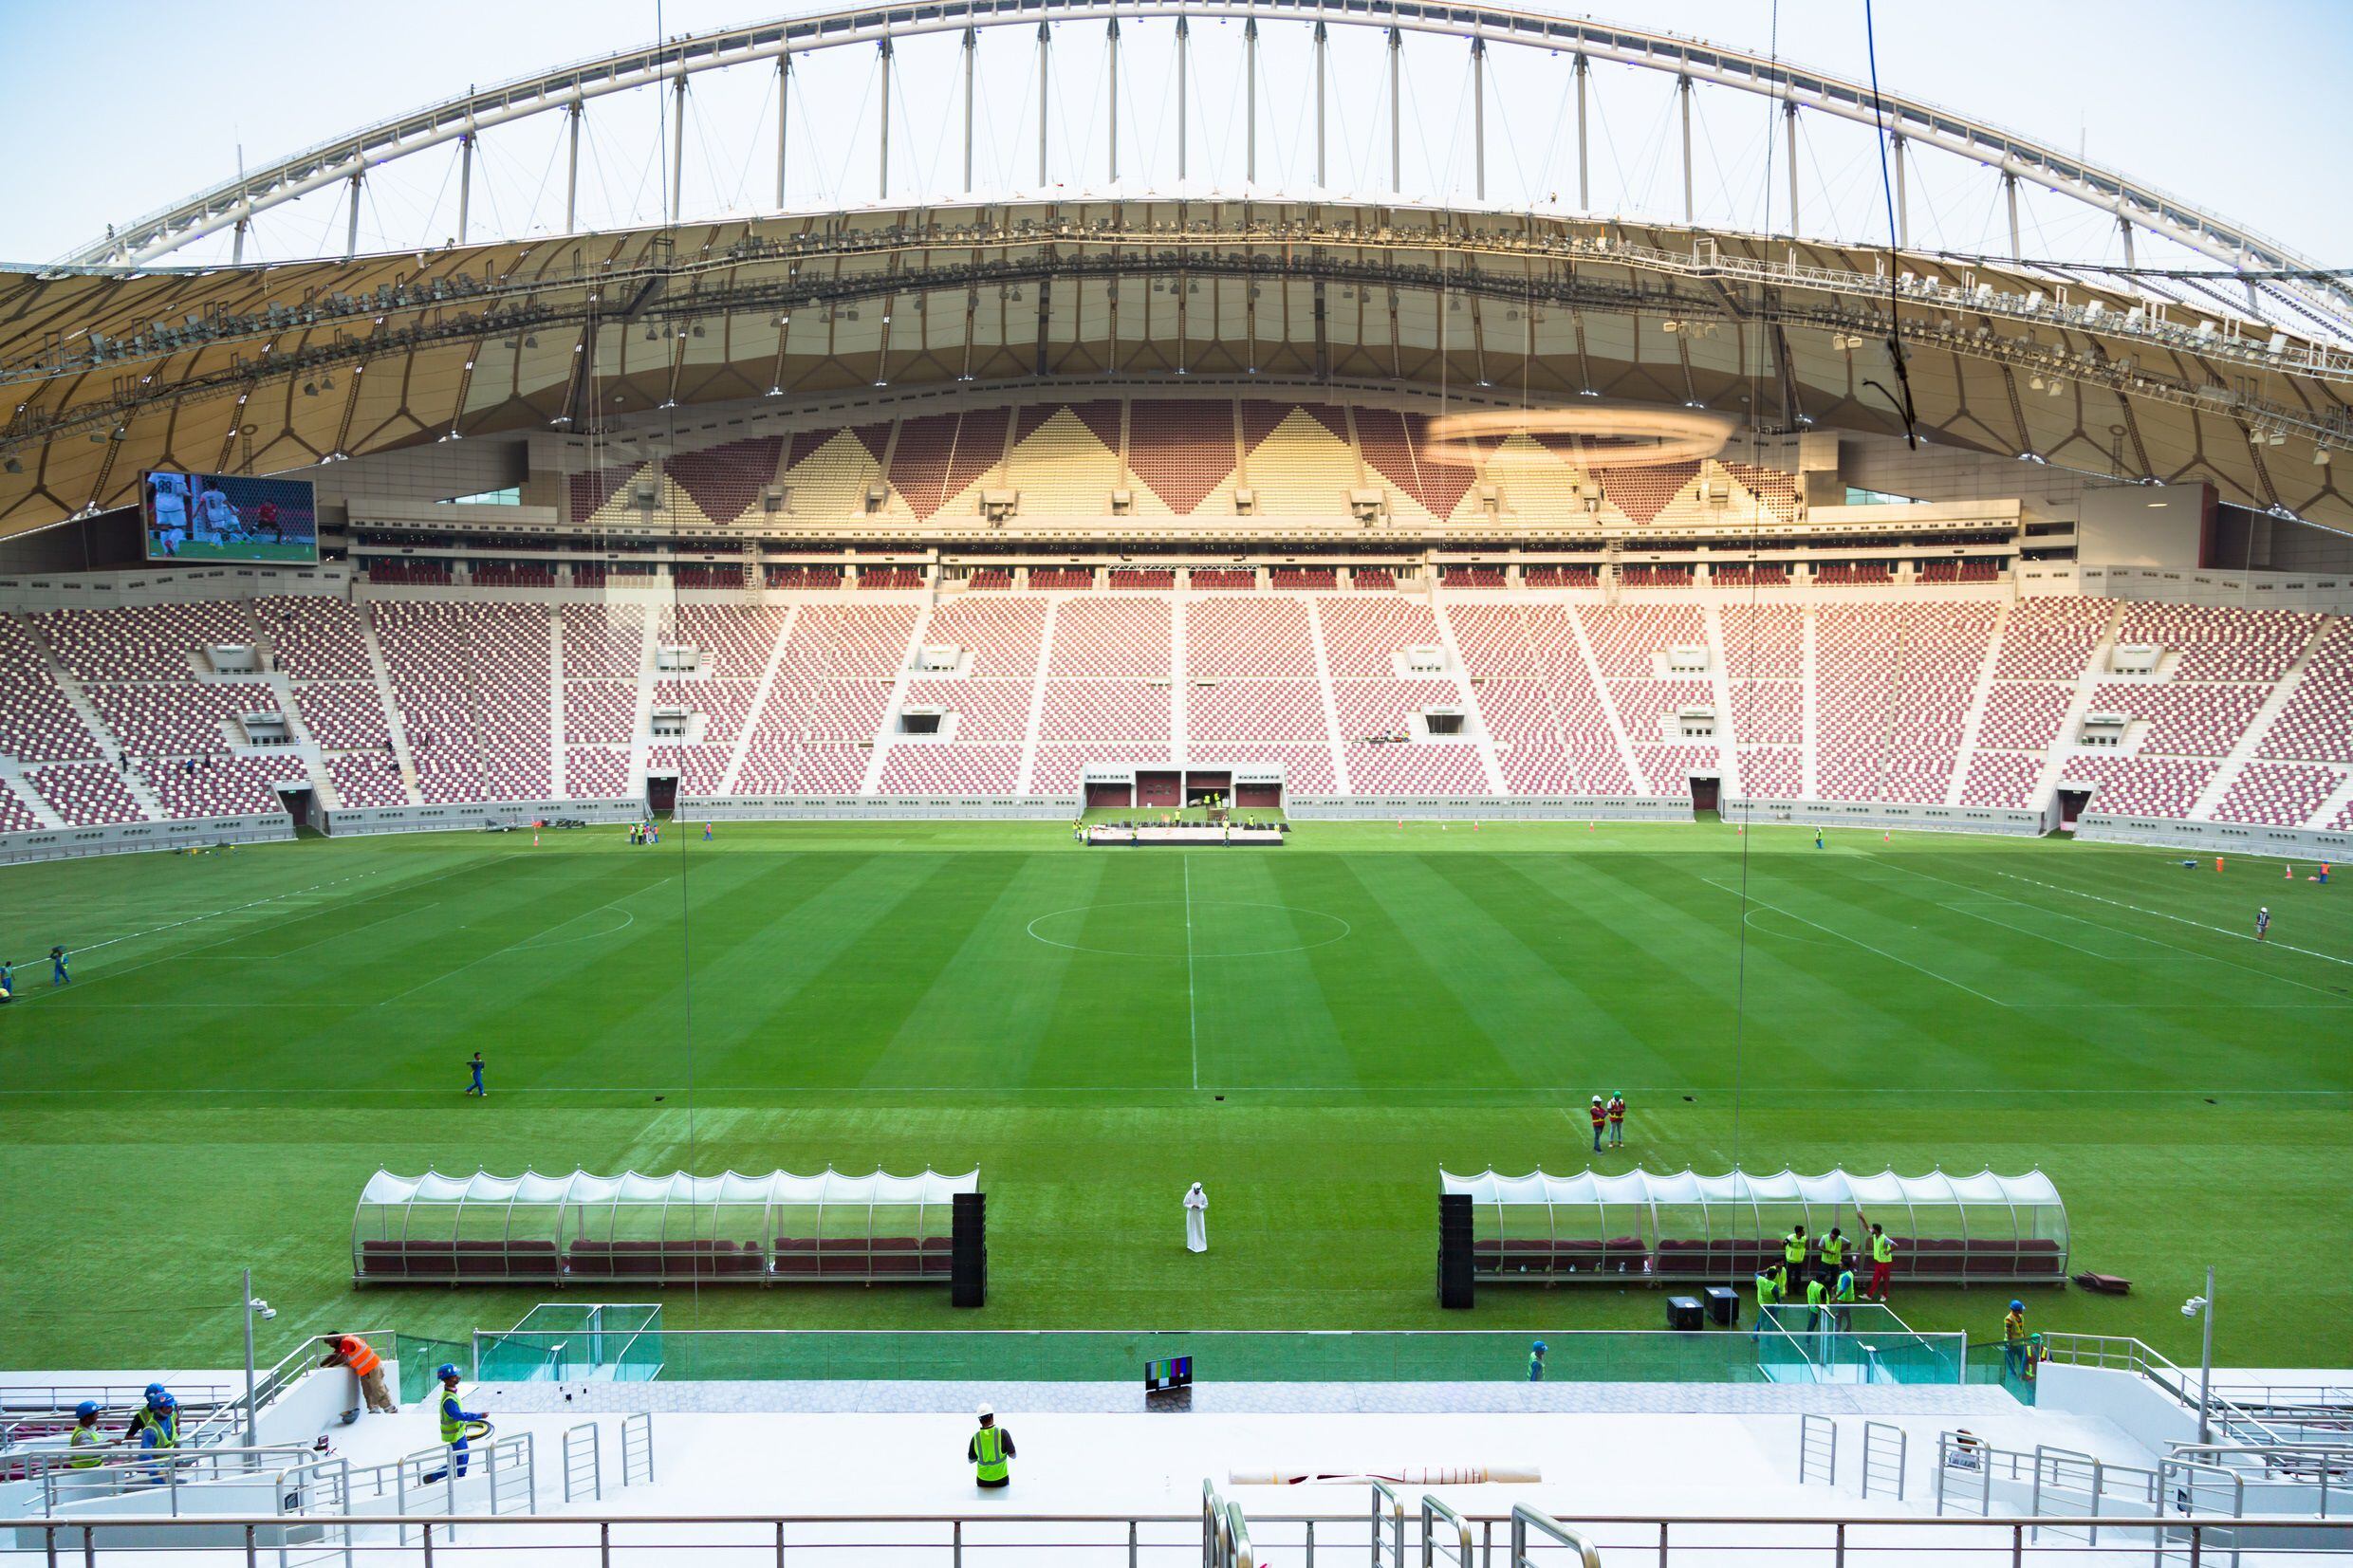 17-05-2017 El estadio internacional de fútbol Khalifa en Qatar.DEPORTES SUPREME COMMITTEE FOR DELIVERY & LEGACY 2022